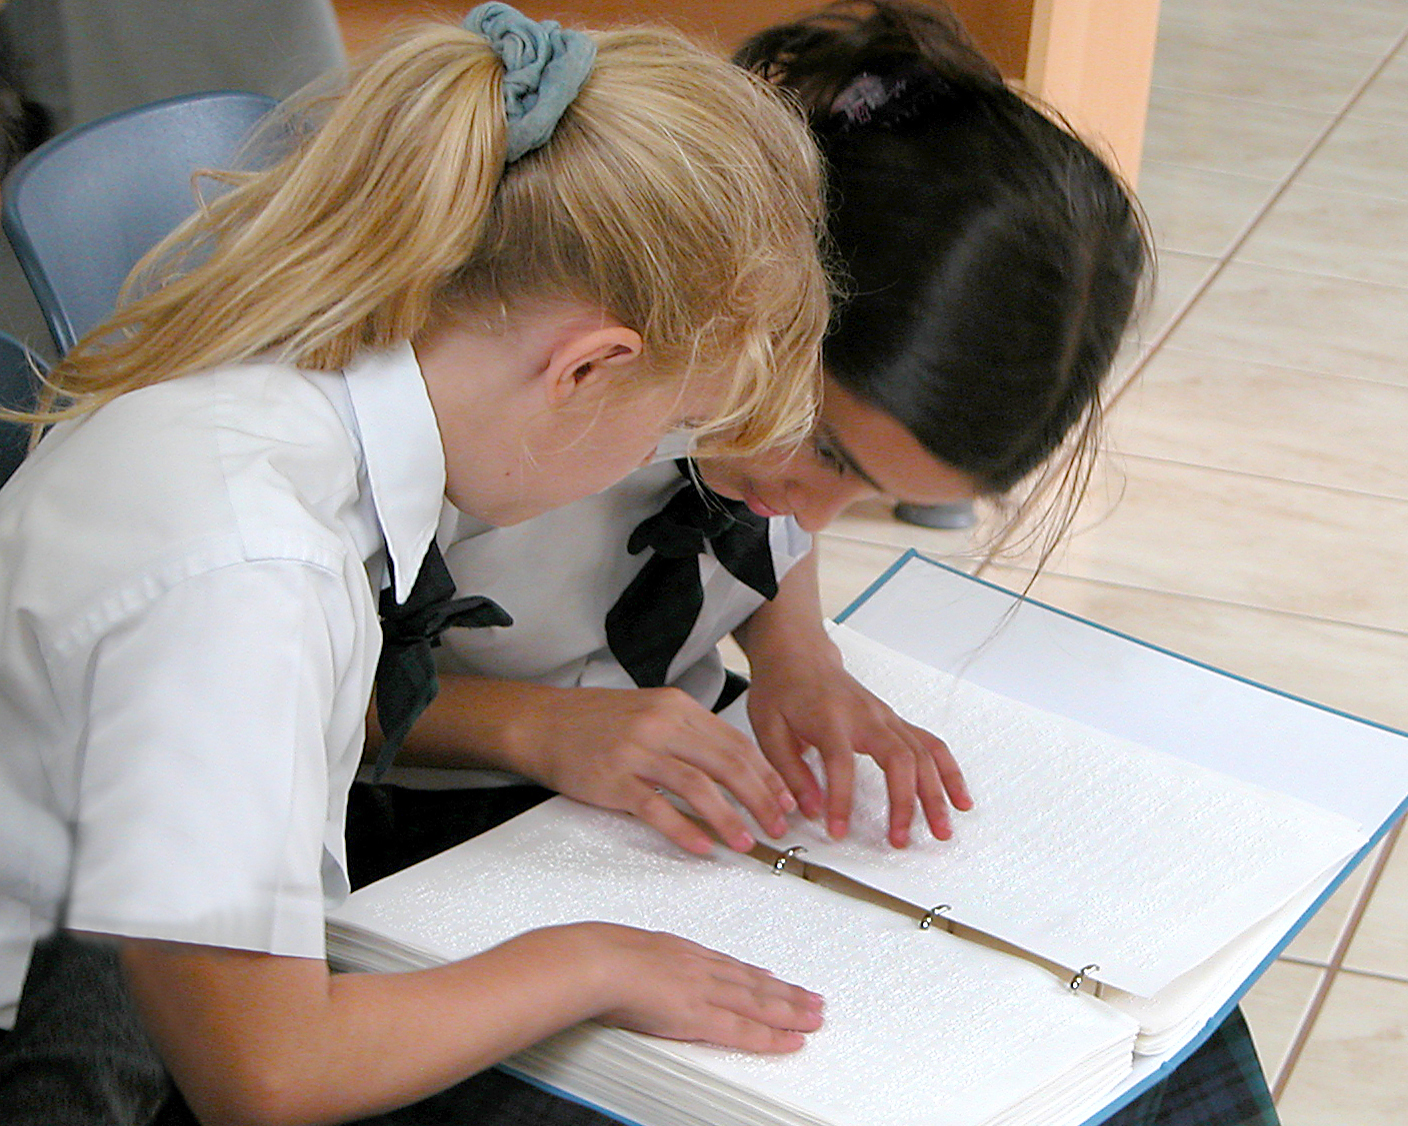 Twee meisjes zitten samen. Hun handen gaan over de bladzijden van een braillebijbel.